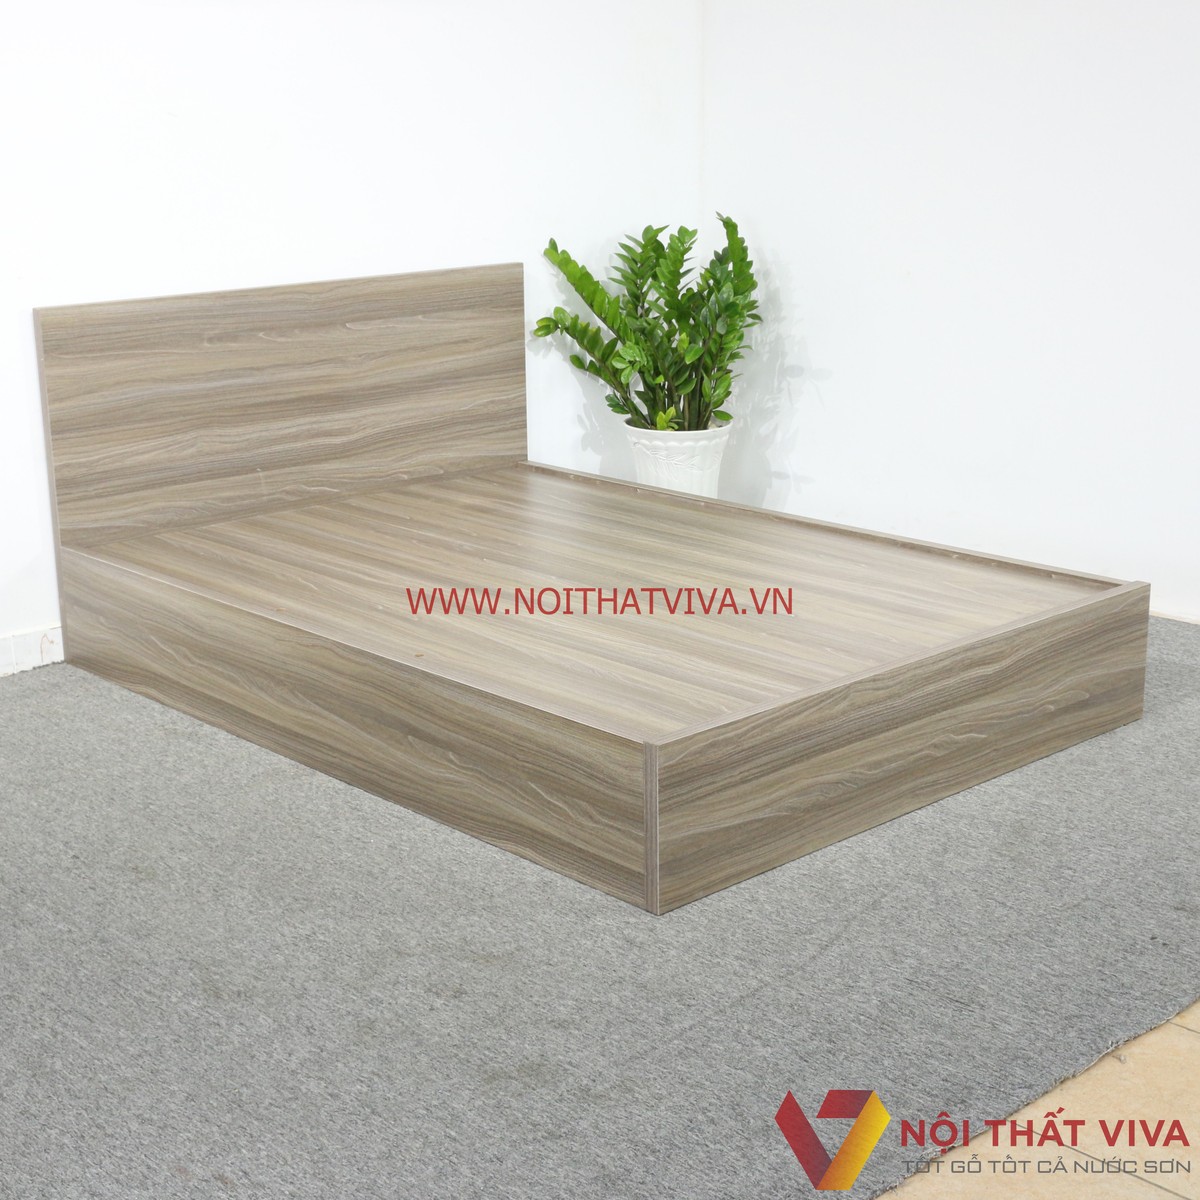 Bộ sưu tập những mẫu giường ngủ gỗ 1m2 đẹp, hiện đại, giá rẻ mới nhất 